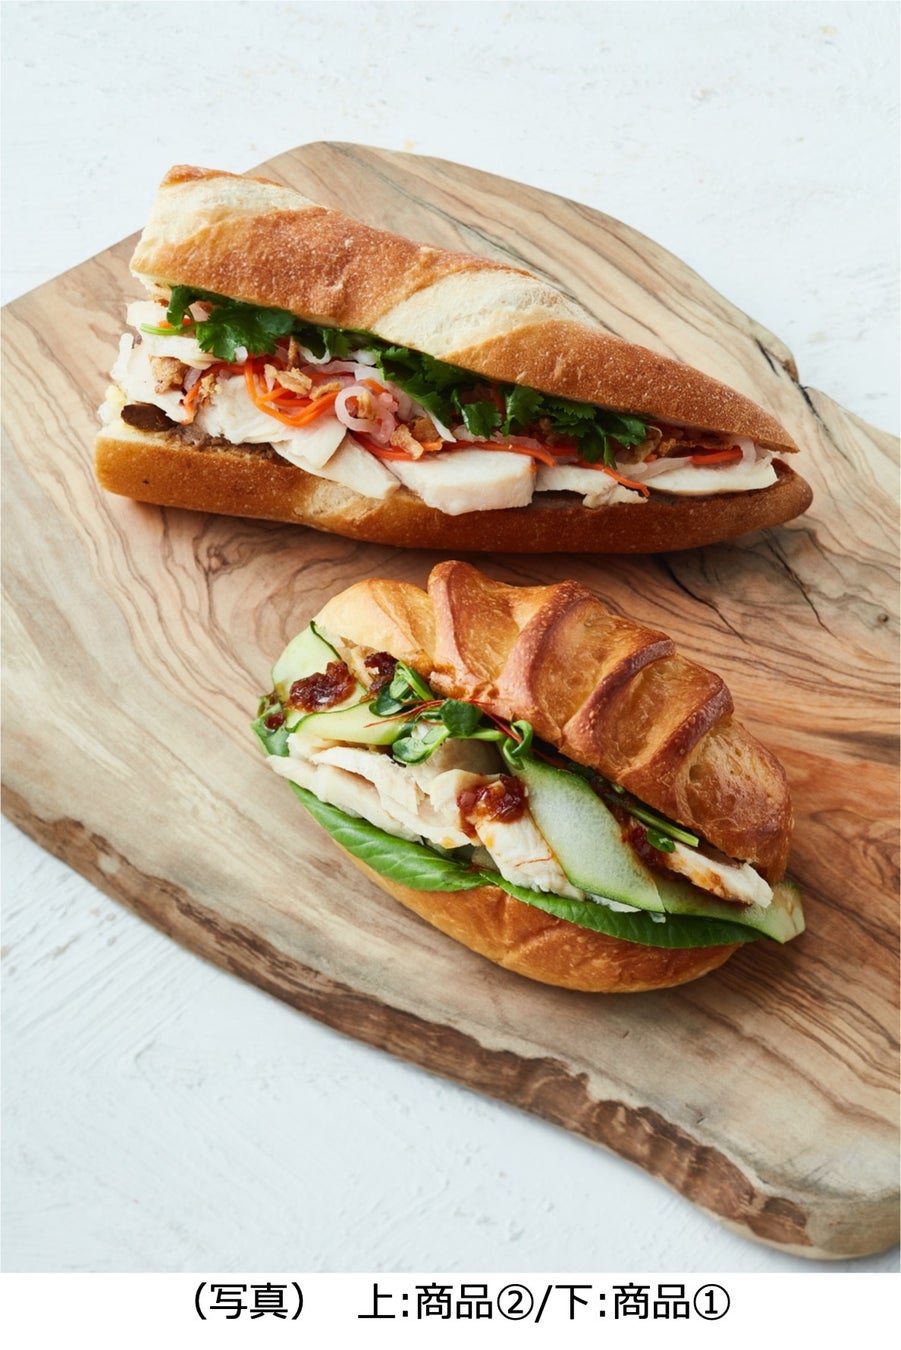 ベイクルーズ運営のブーランジェリー「BOUL’ANGE(ブール アンジュ)」14店舗で「森林どりと緑野菜の旨辛サンド」などを7月1日から発売